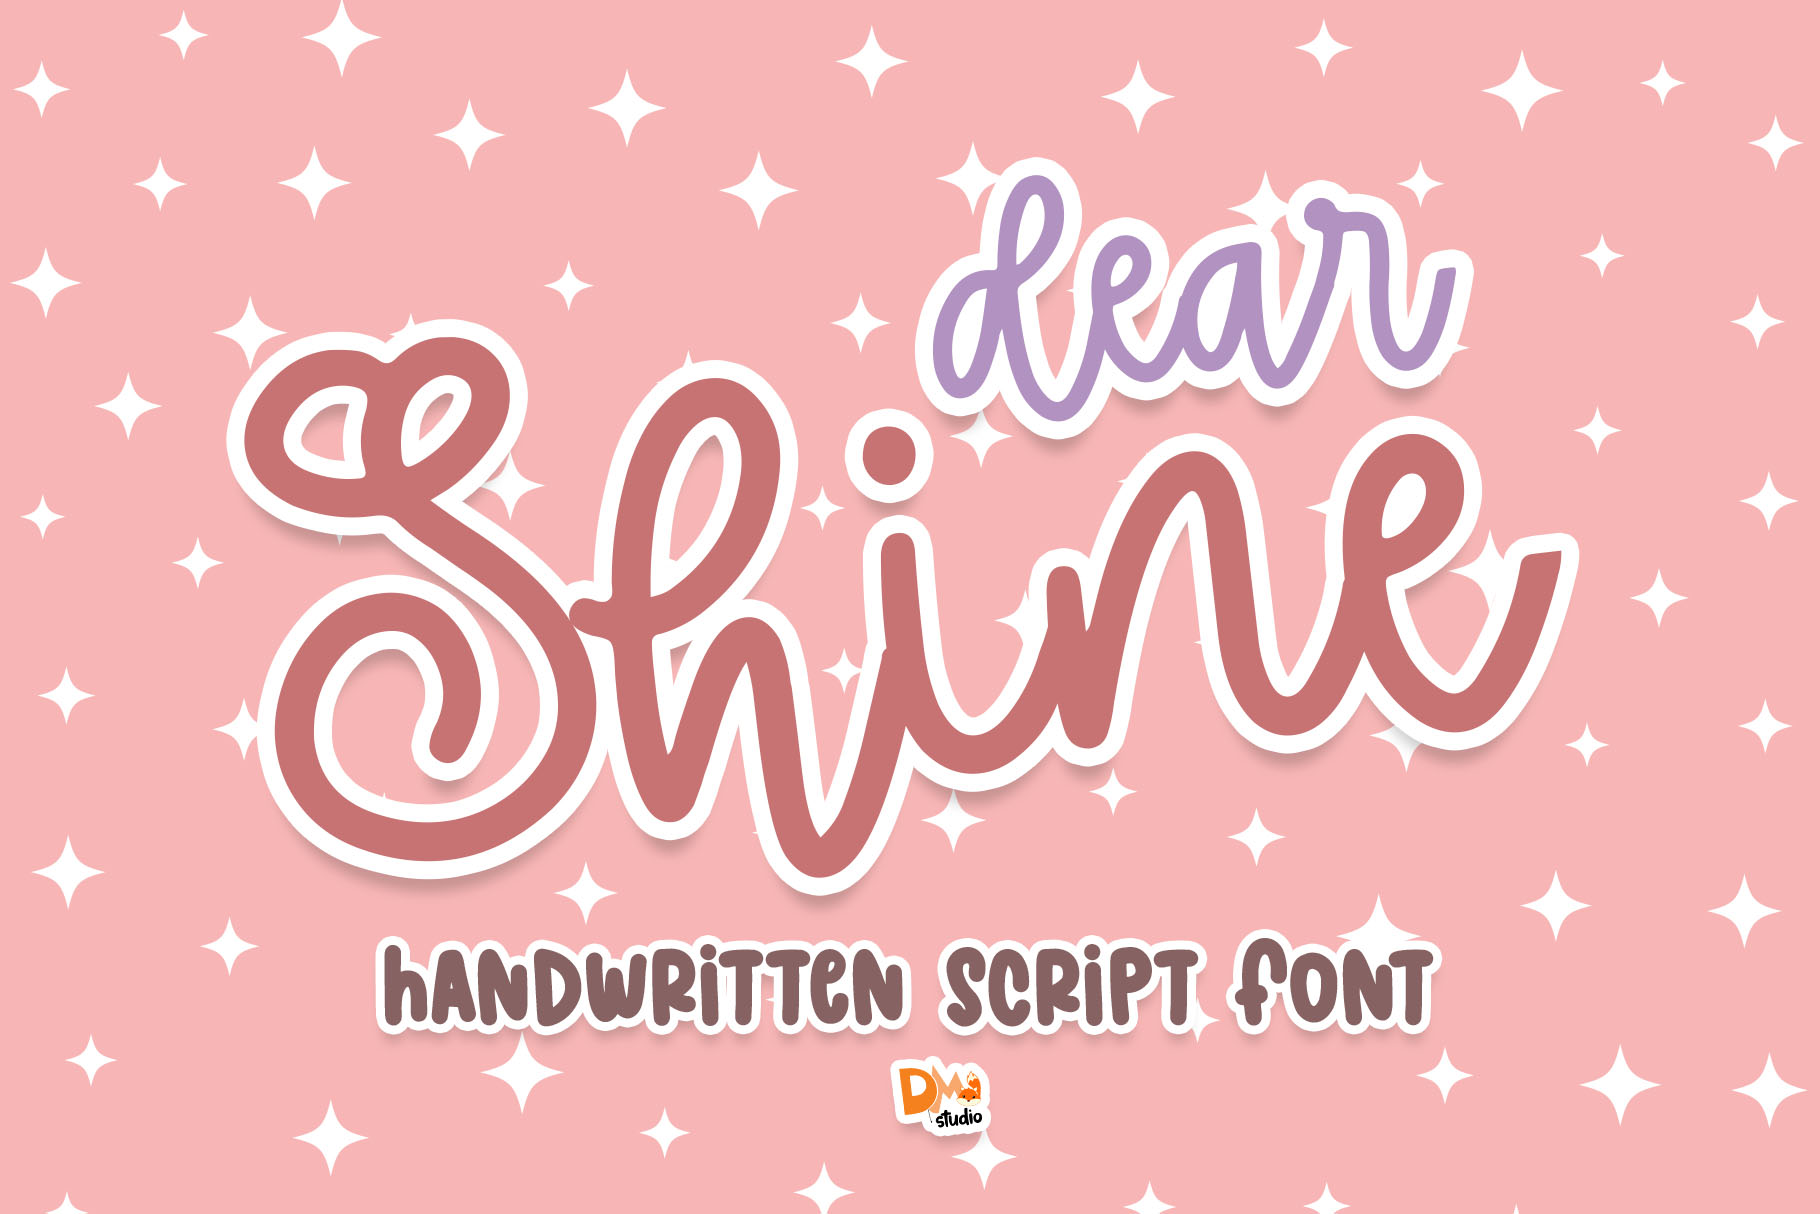 Dear Shine